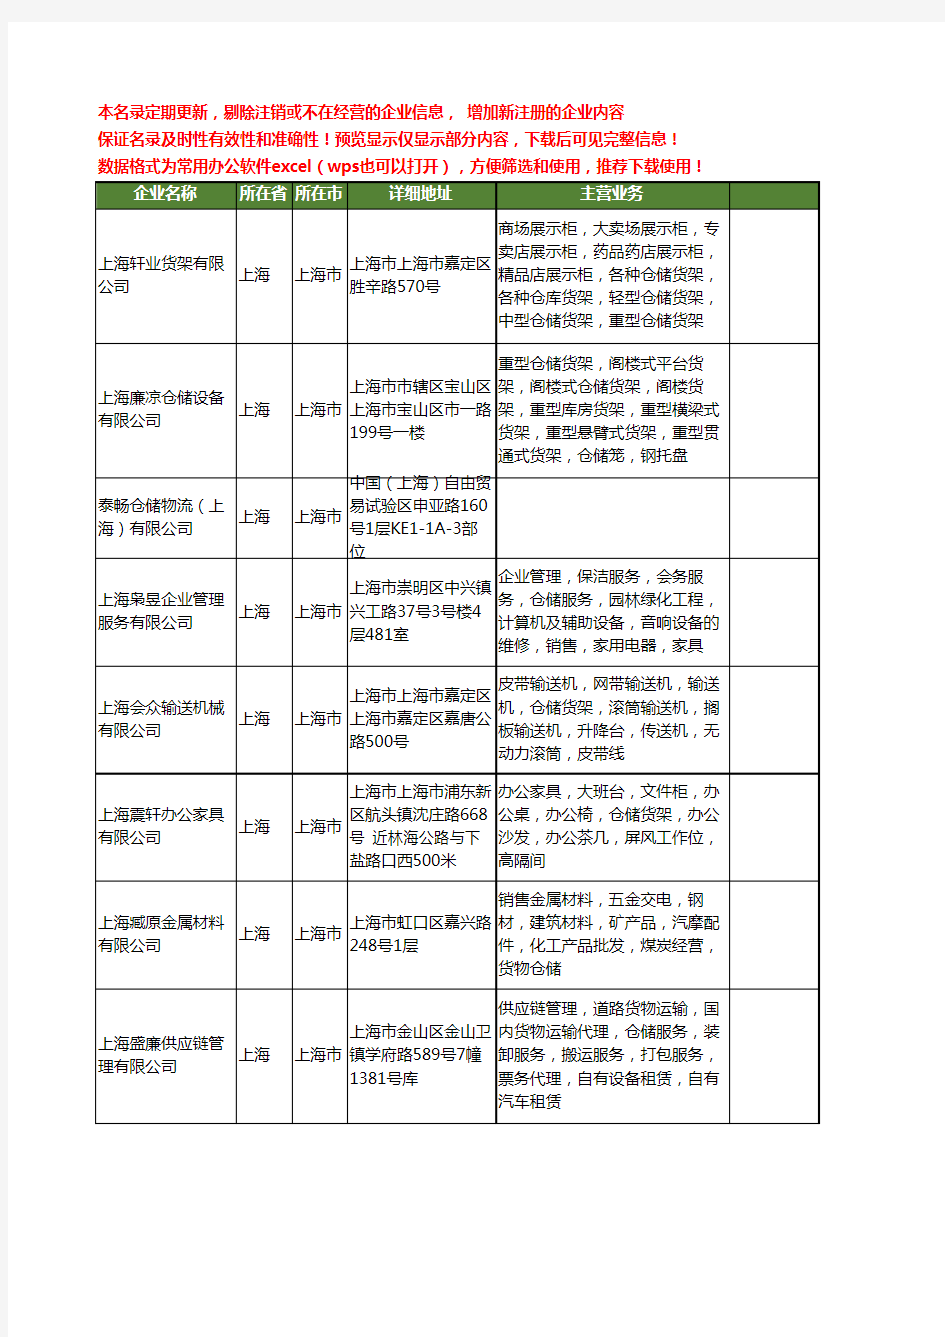 新版上海市仓储工商企业公司商家名录名单联系方式大全401家